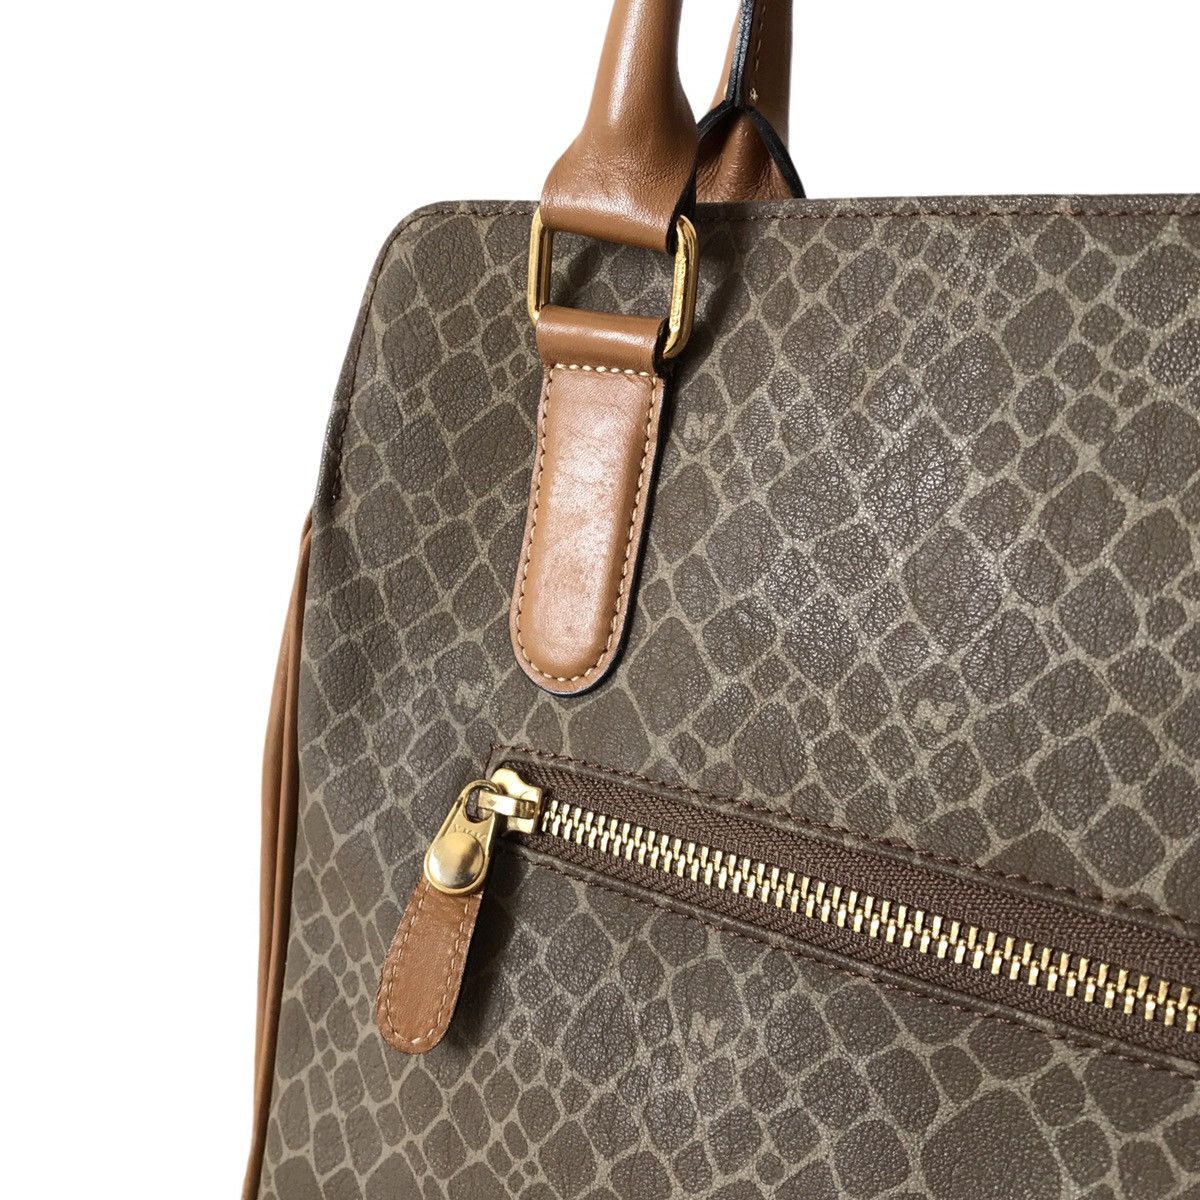 Vintage Authentic Vintage Nina Ricci Paris Leather Handheld Bag Size ONE SIZE - 5 Thumbnail